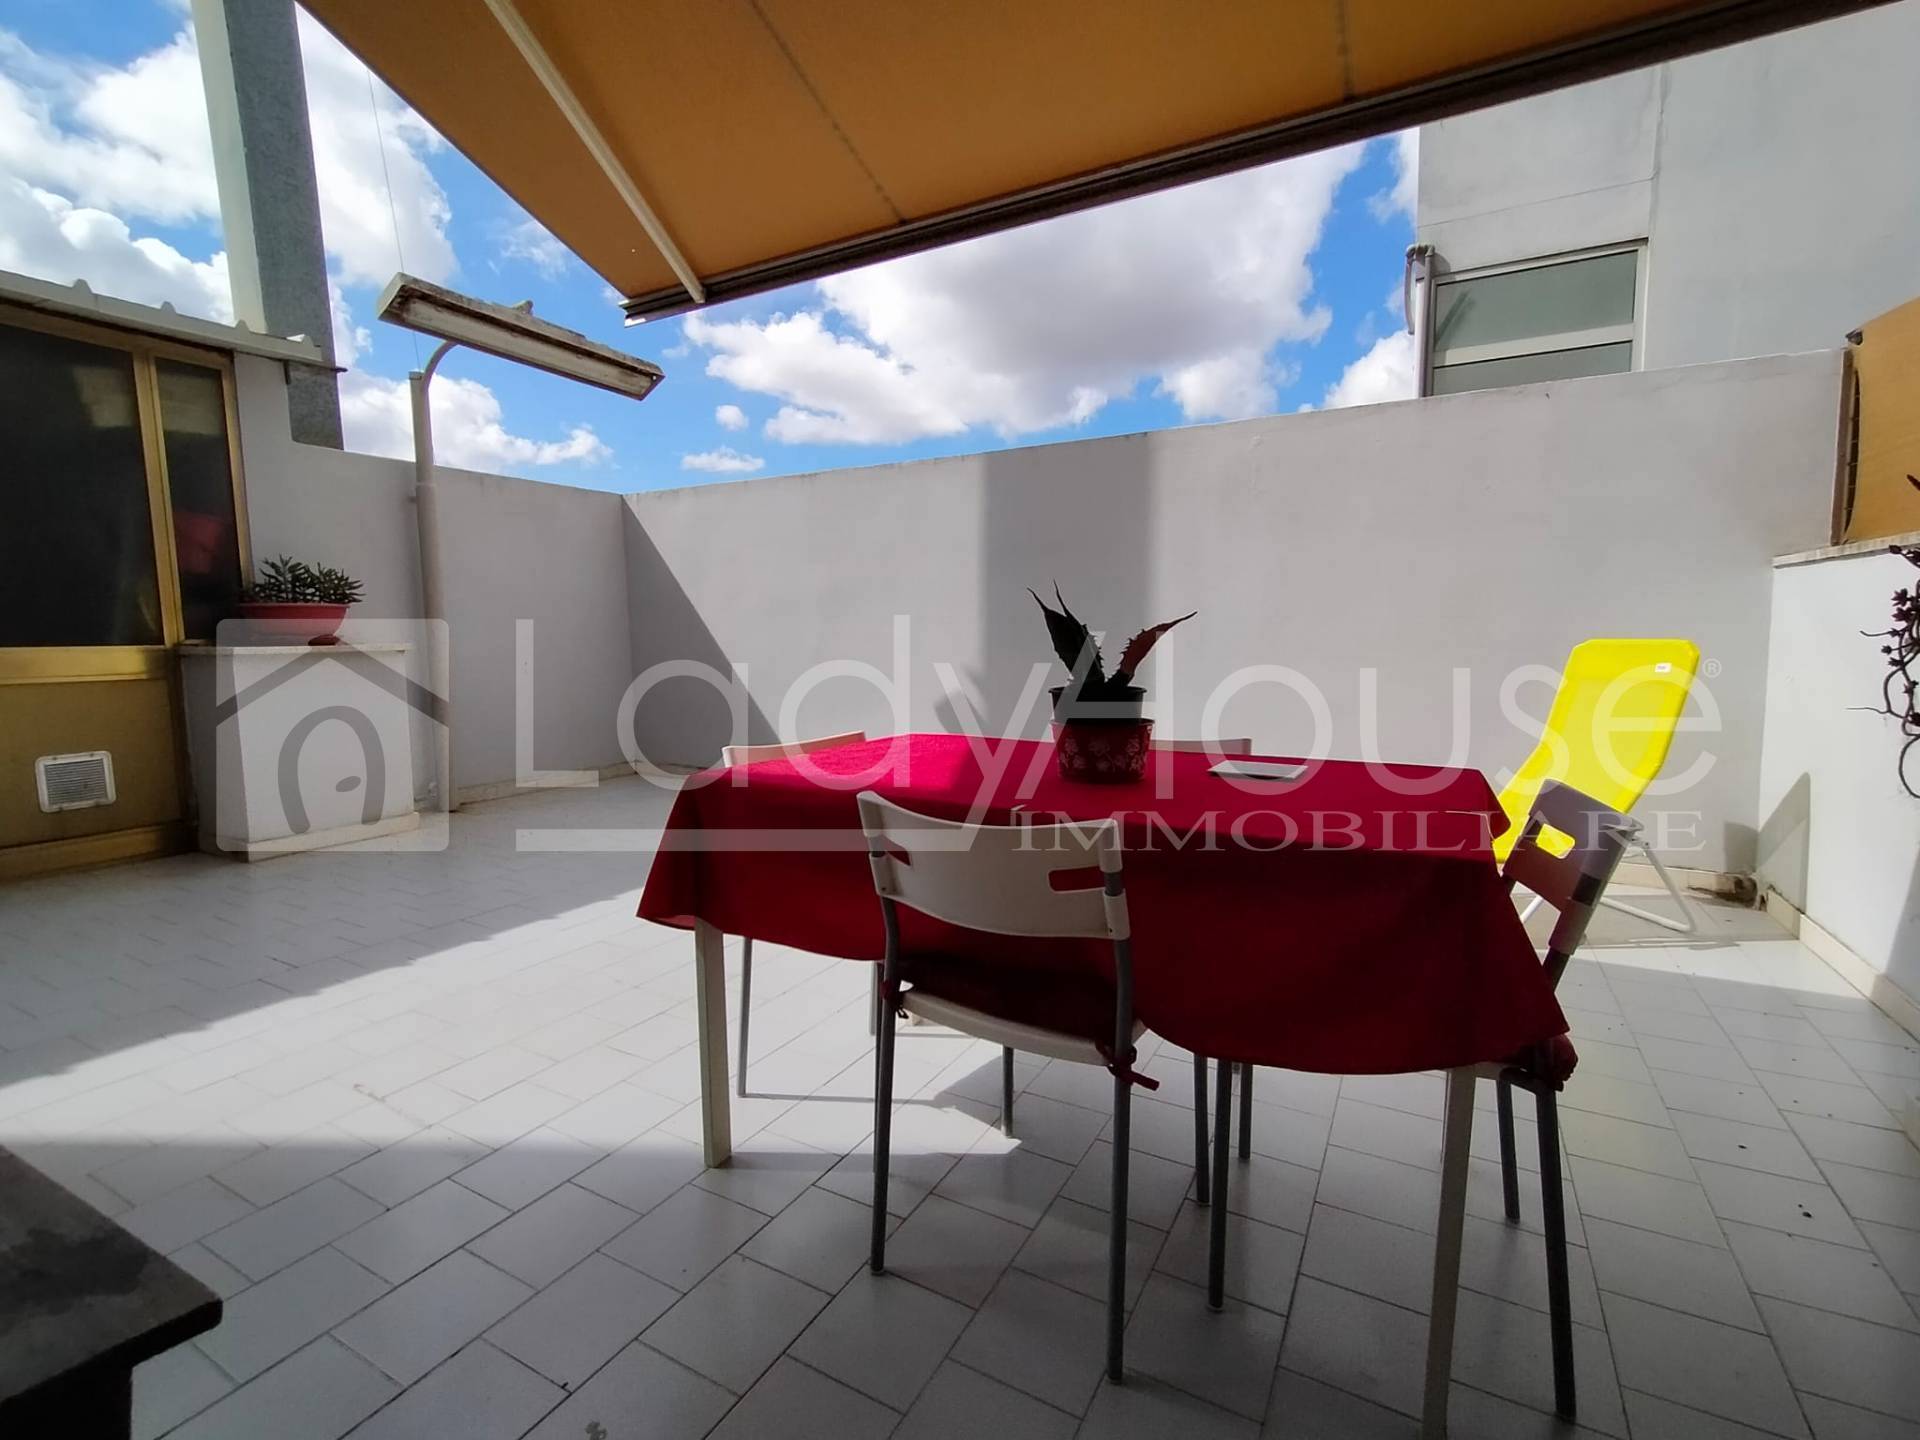 Appartamento in vendita a Sannicola, 6 locali, prezzo € 149.000 | PortaleAgenzieImmobiliari.it